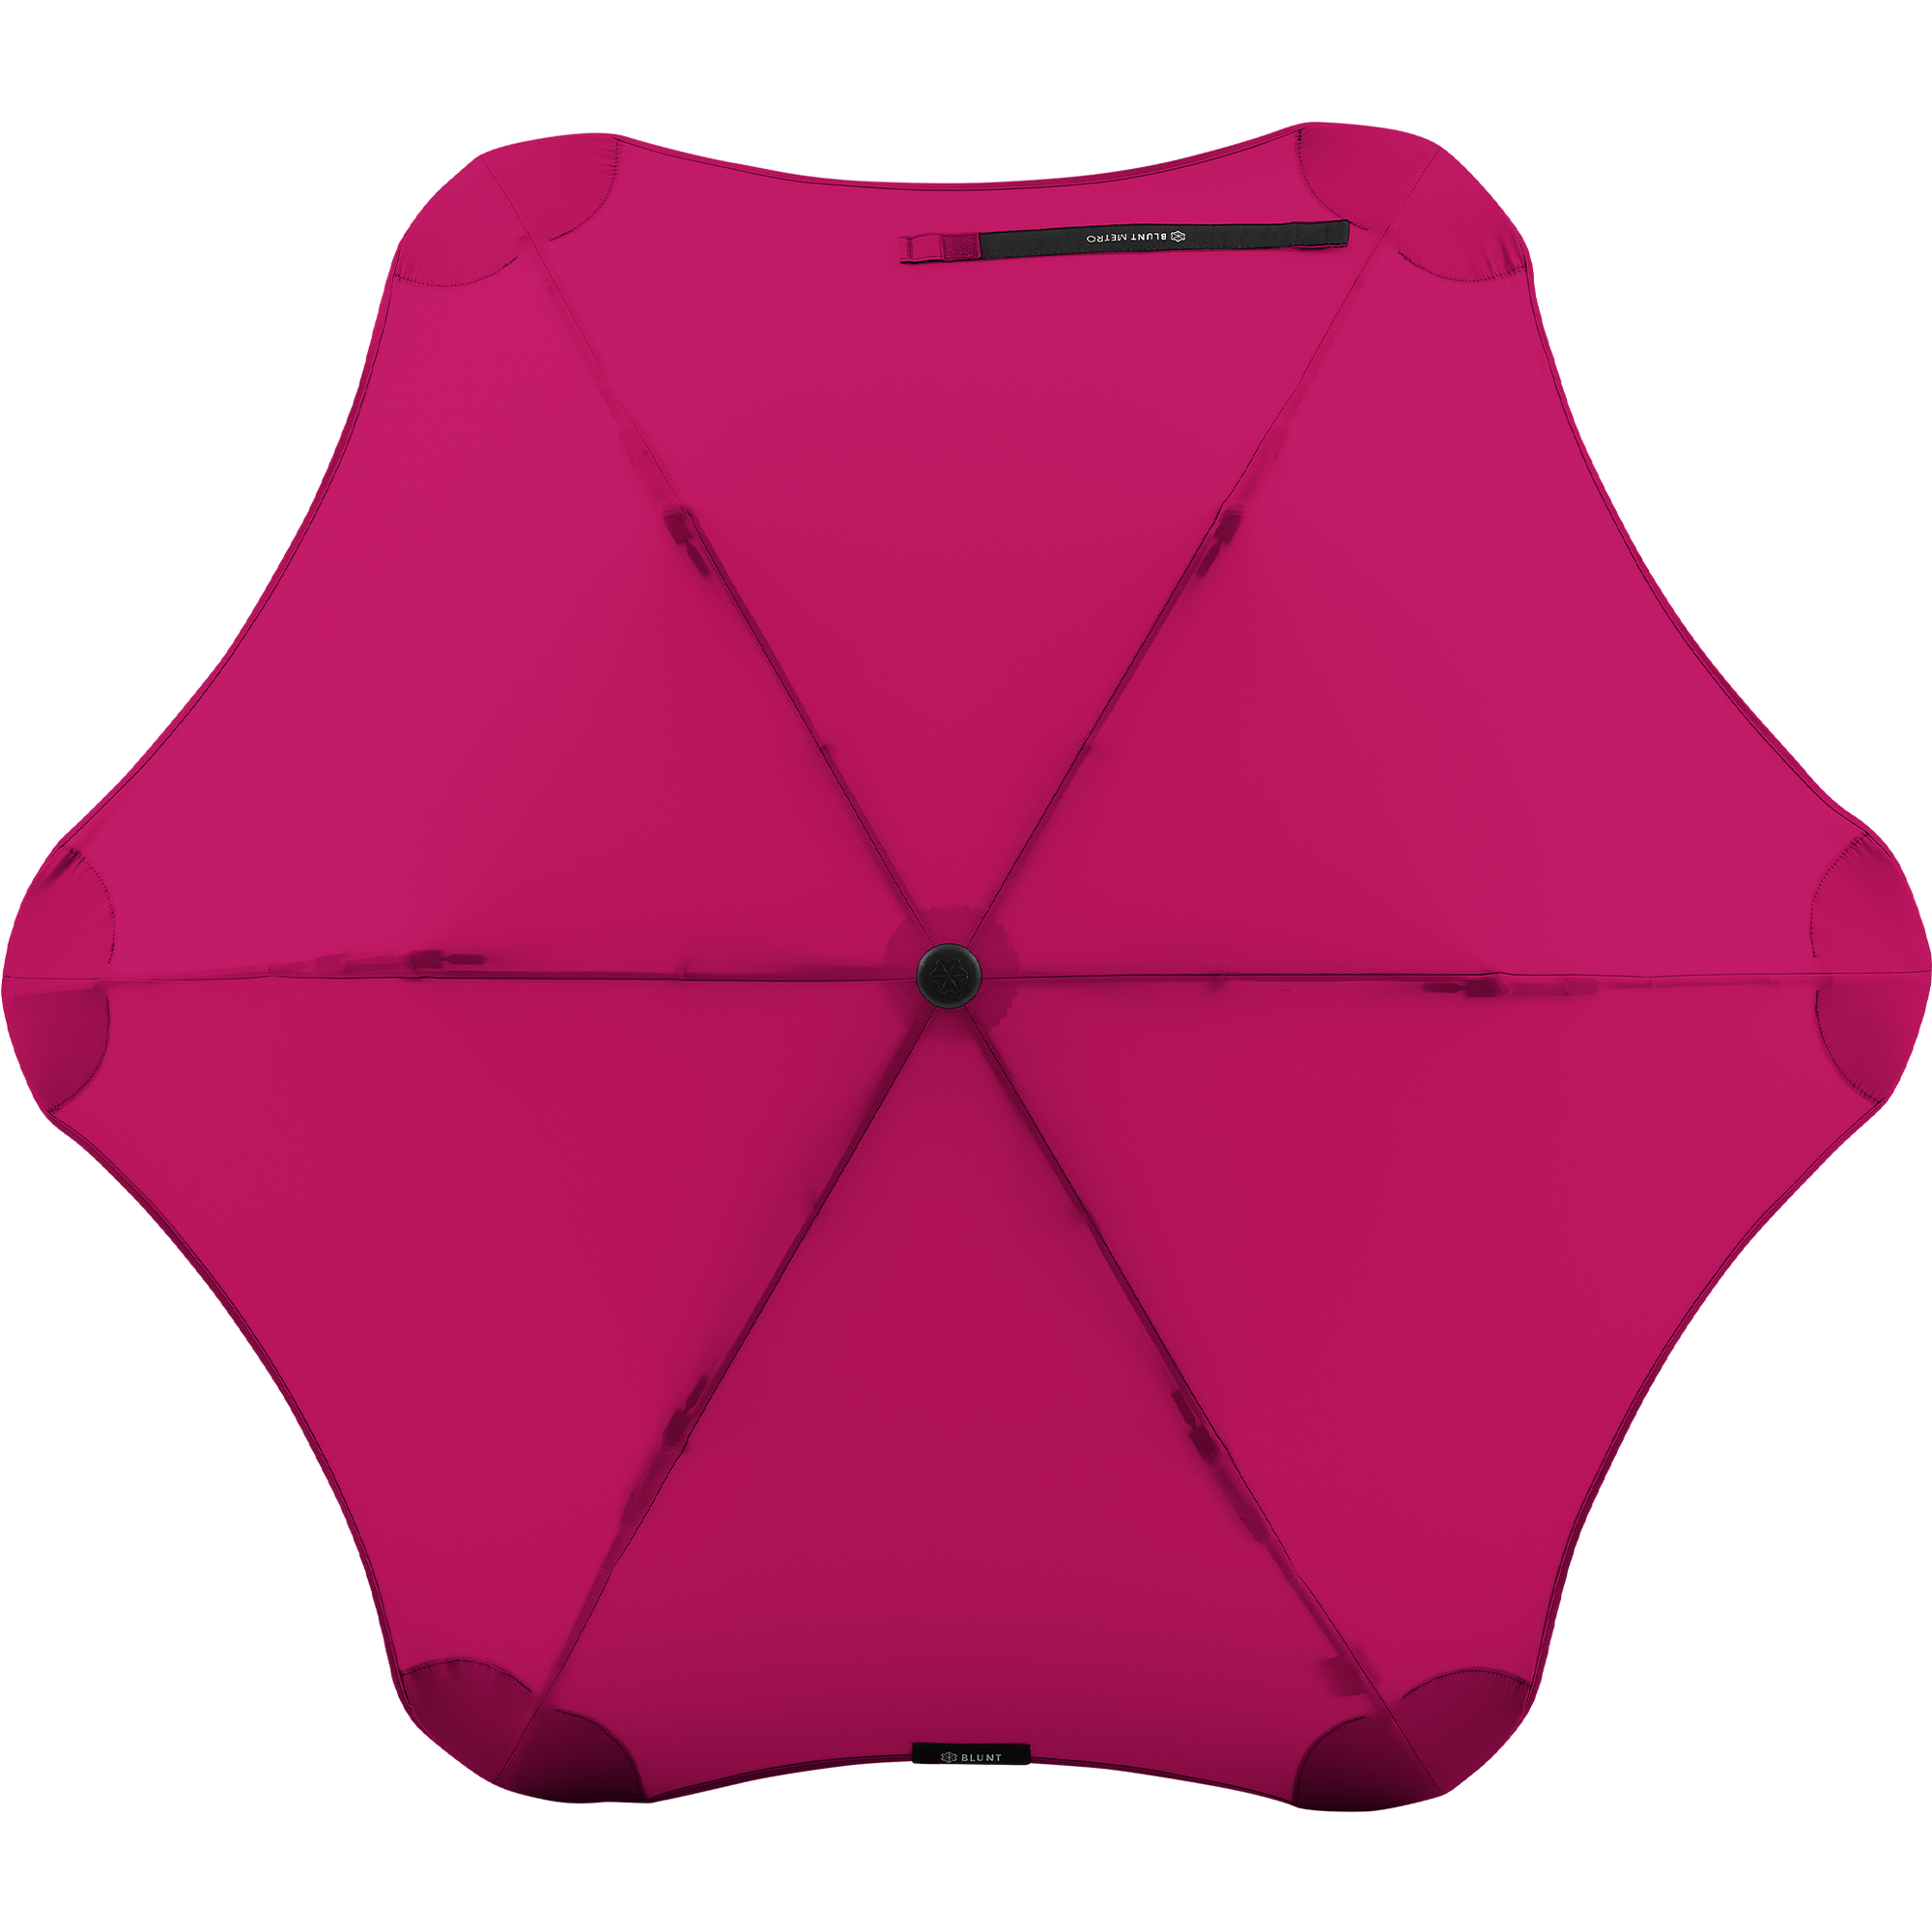 Blunt Metro Umbrella - Pink